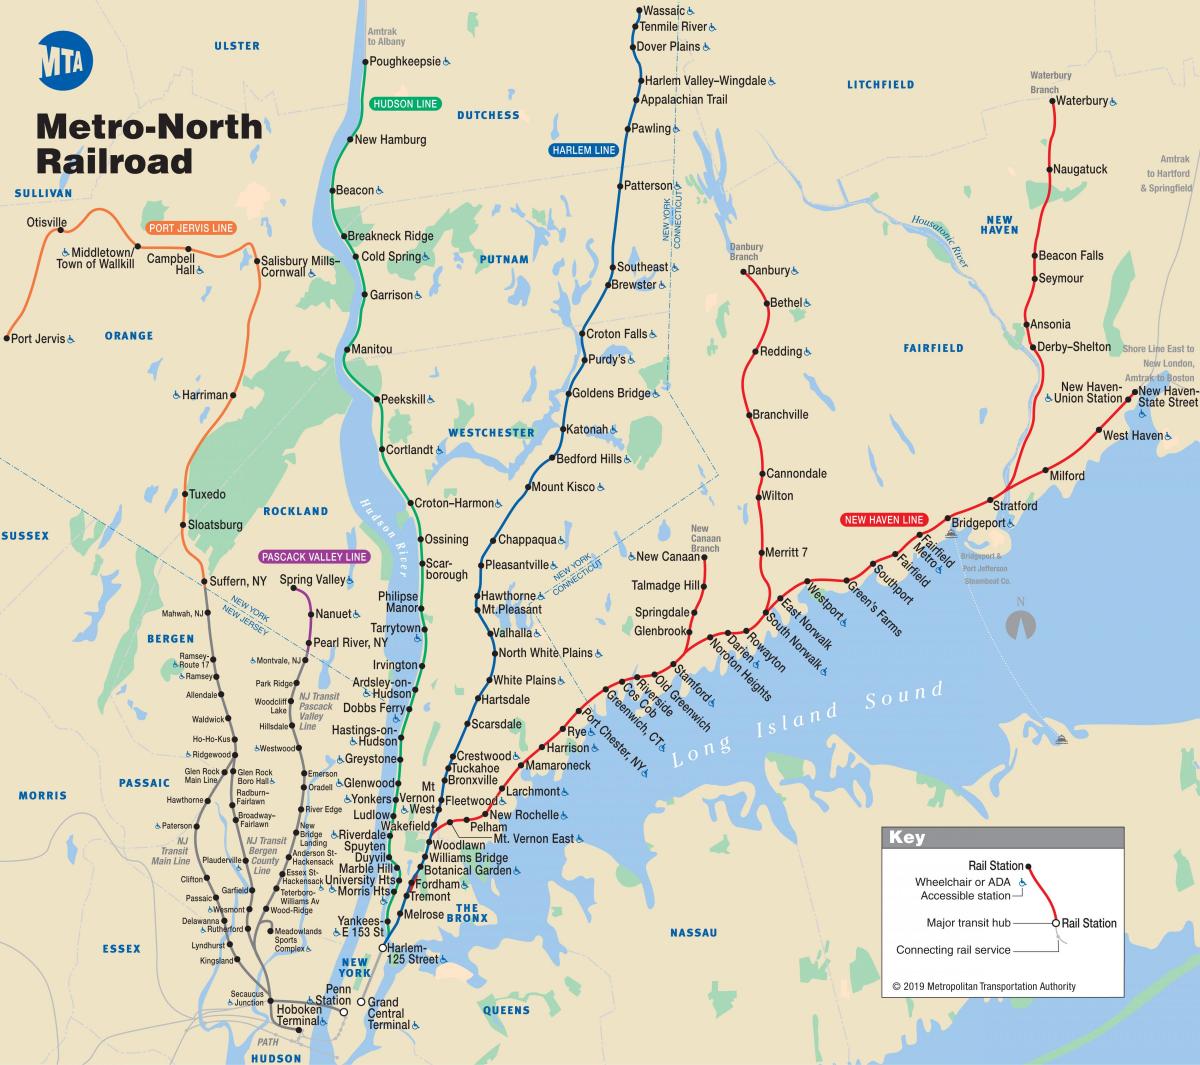 Metro de nueva York al norte del mapa